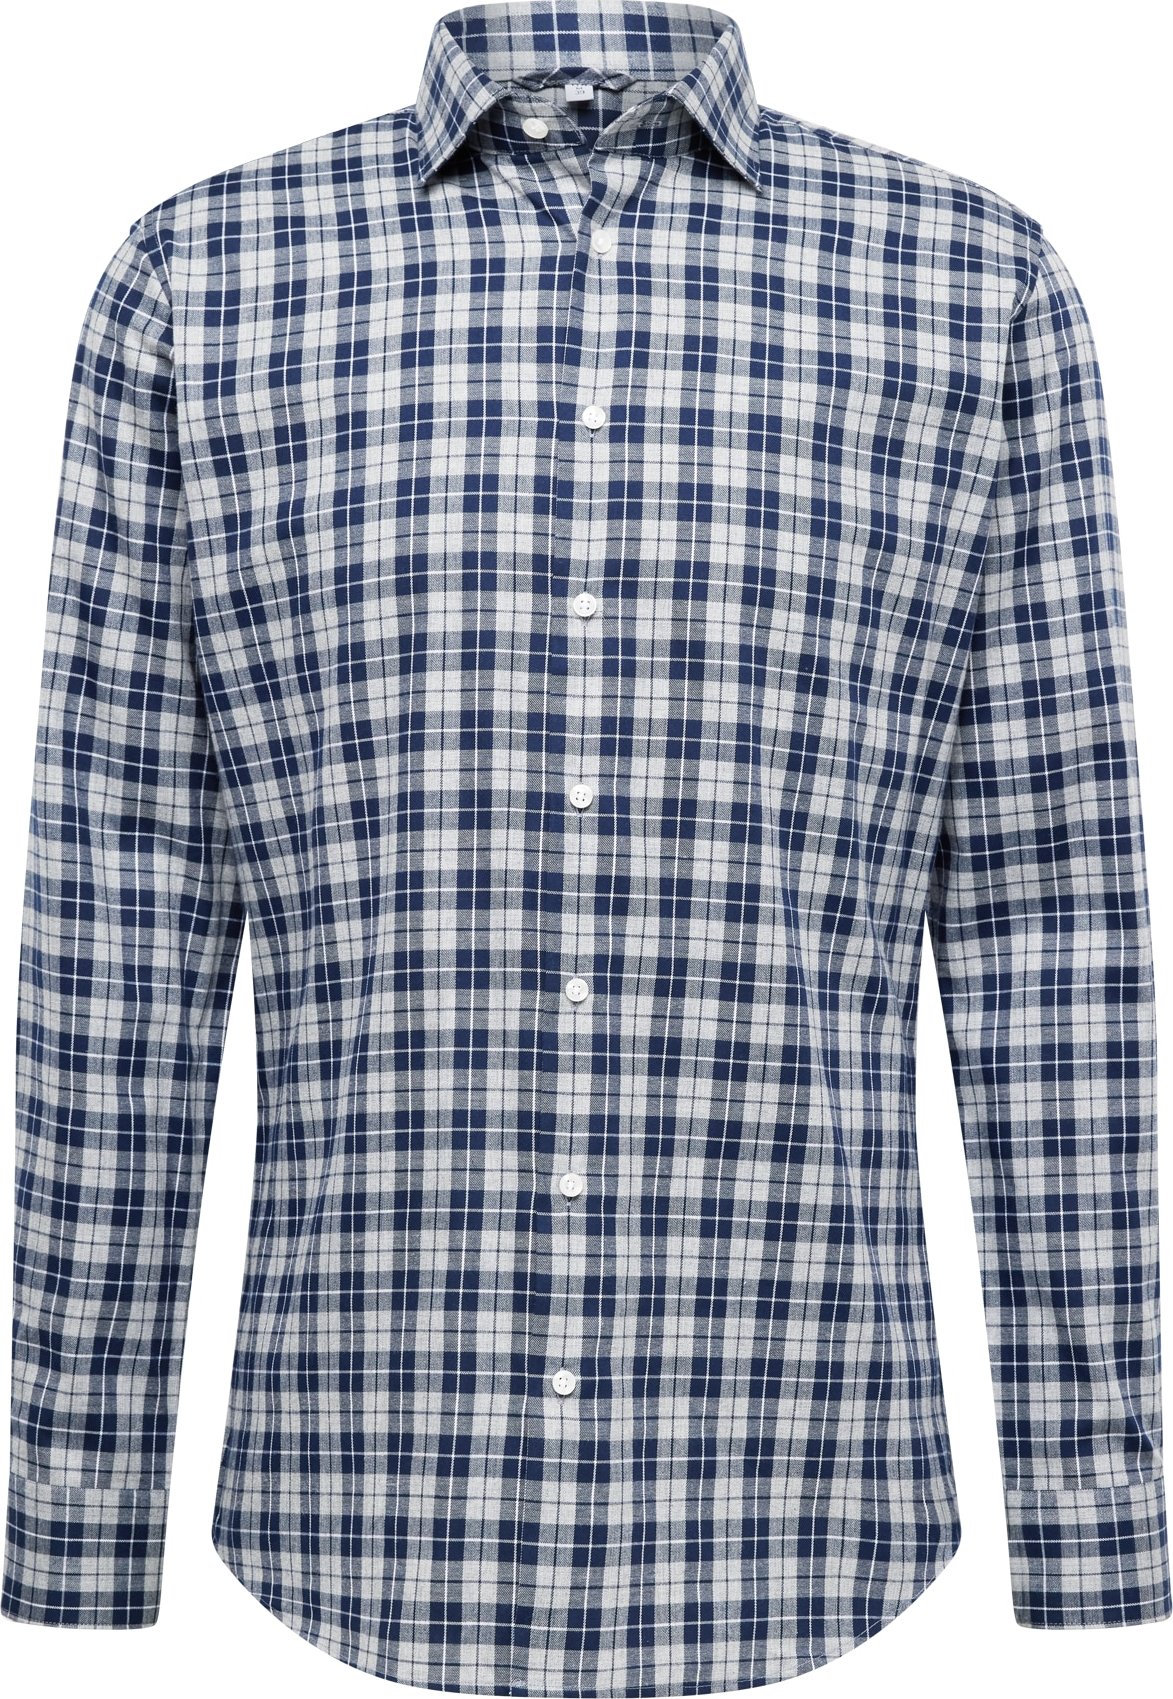 Společenská košile seidensticker námořnická modř / světle šedá